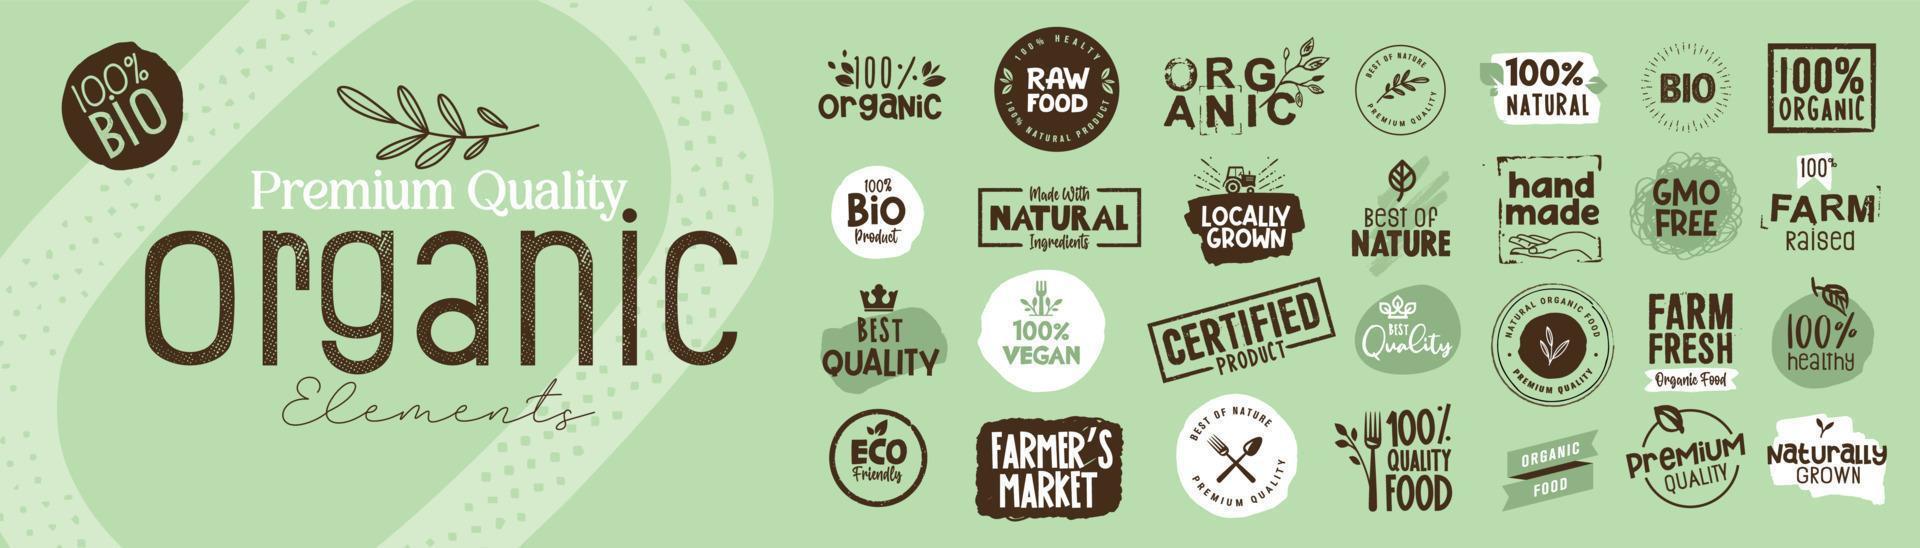 Bio-Elemente in Premium-Qualität für Lebensmittelmarkt, E-Commerce, Werbung für Bio-Produkte, Restaurant, gesundes Leben. Vektorillustrationskonzepte für Webdesign, Verpackungsdesign, Marketing. vektor